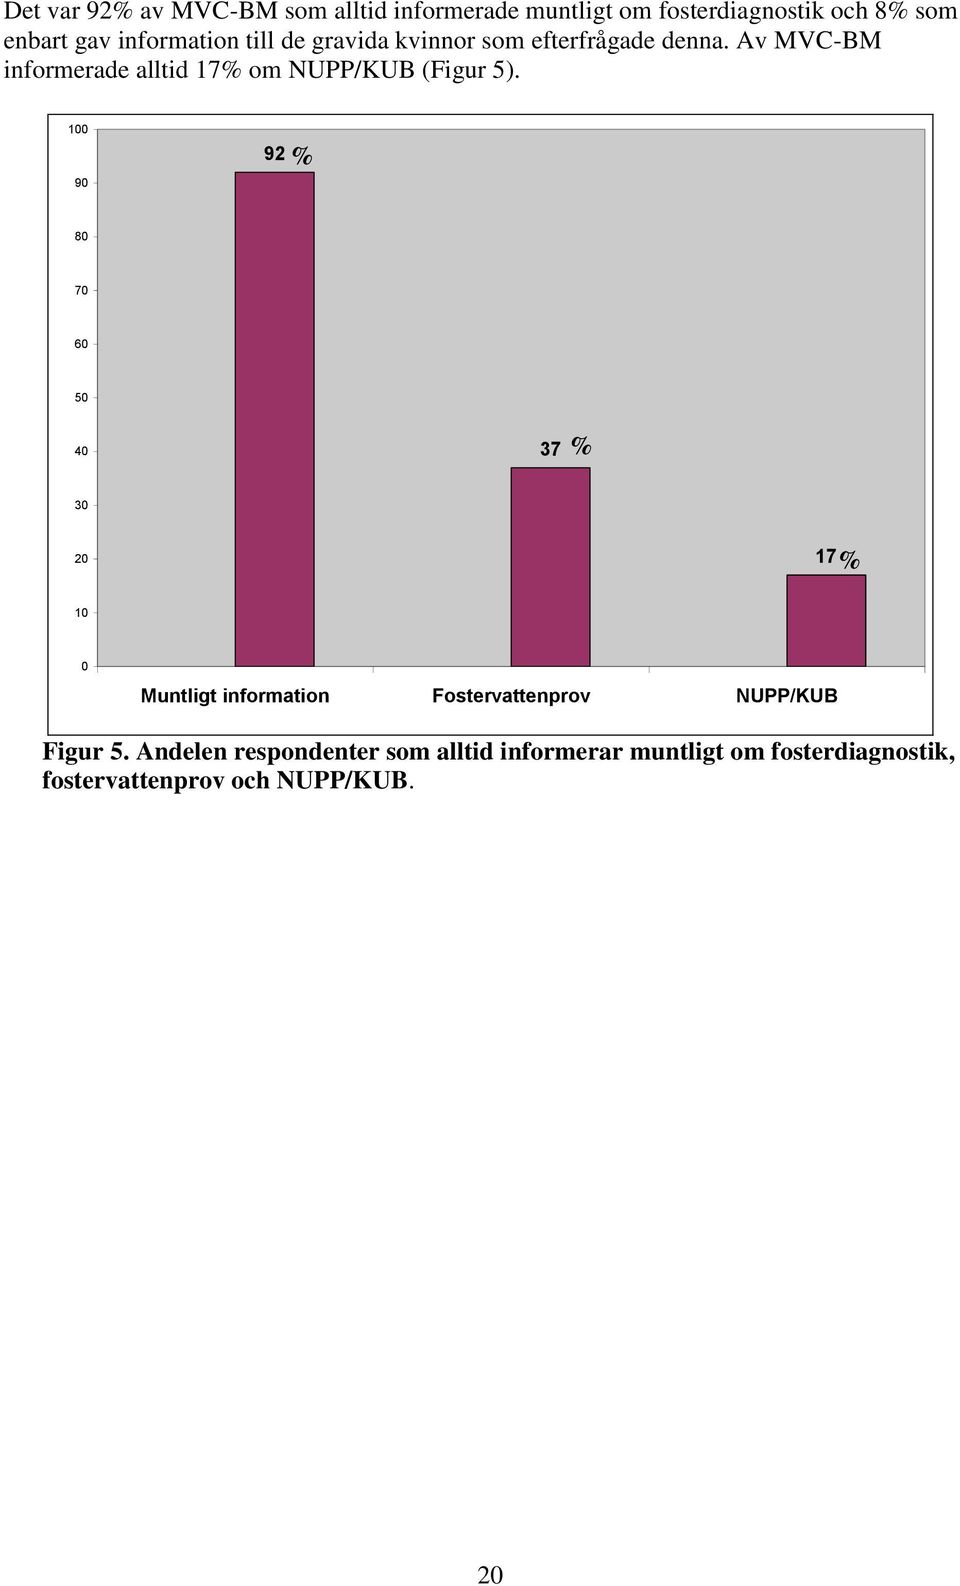 Av MVC-BM informerade alltid 17% om NUPP/KUB (Figur 5).